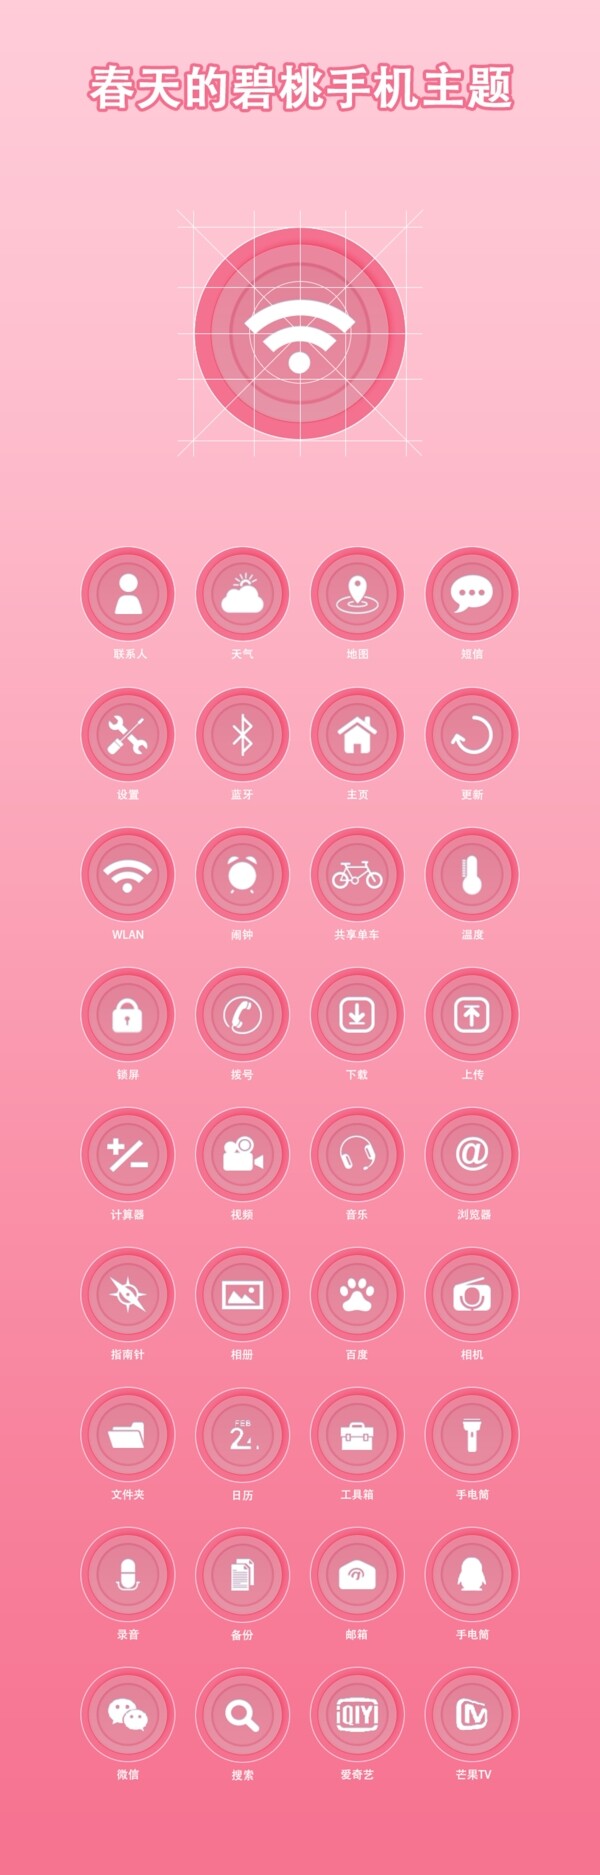 春天碧桃桃花粉色可爱手机主题设计